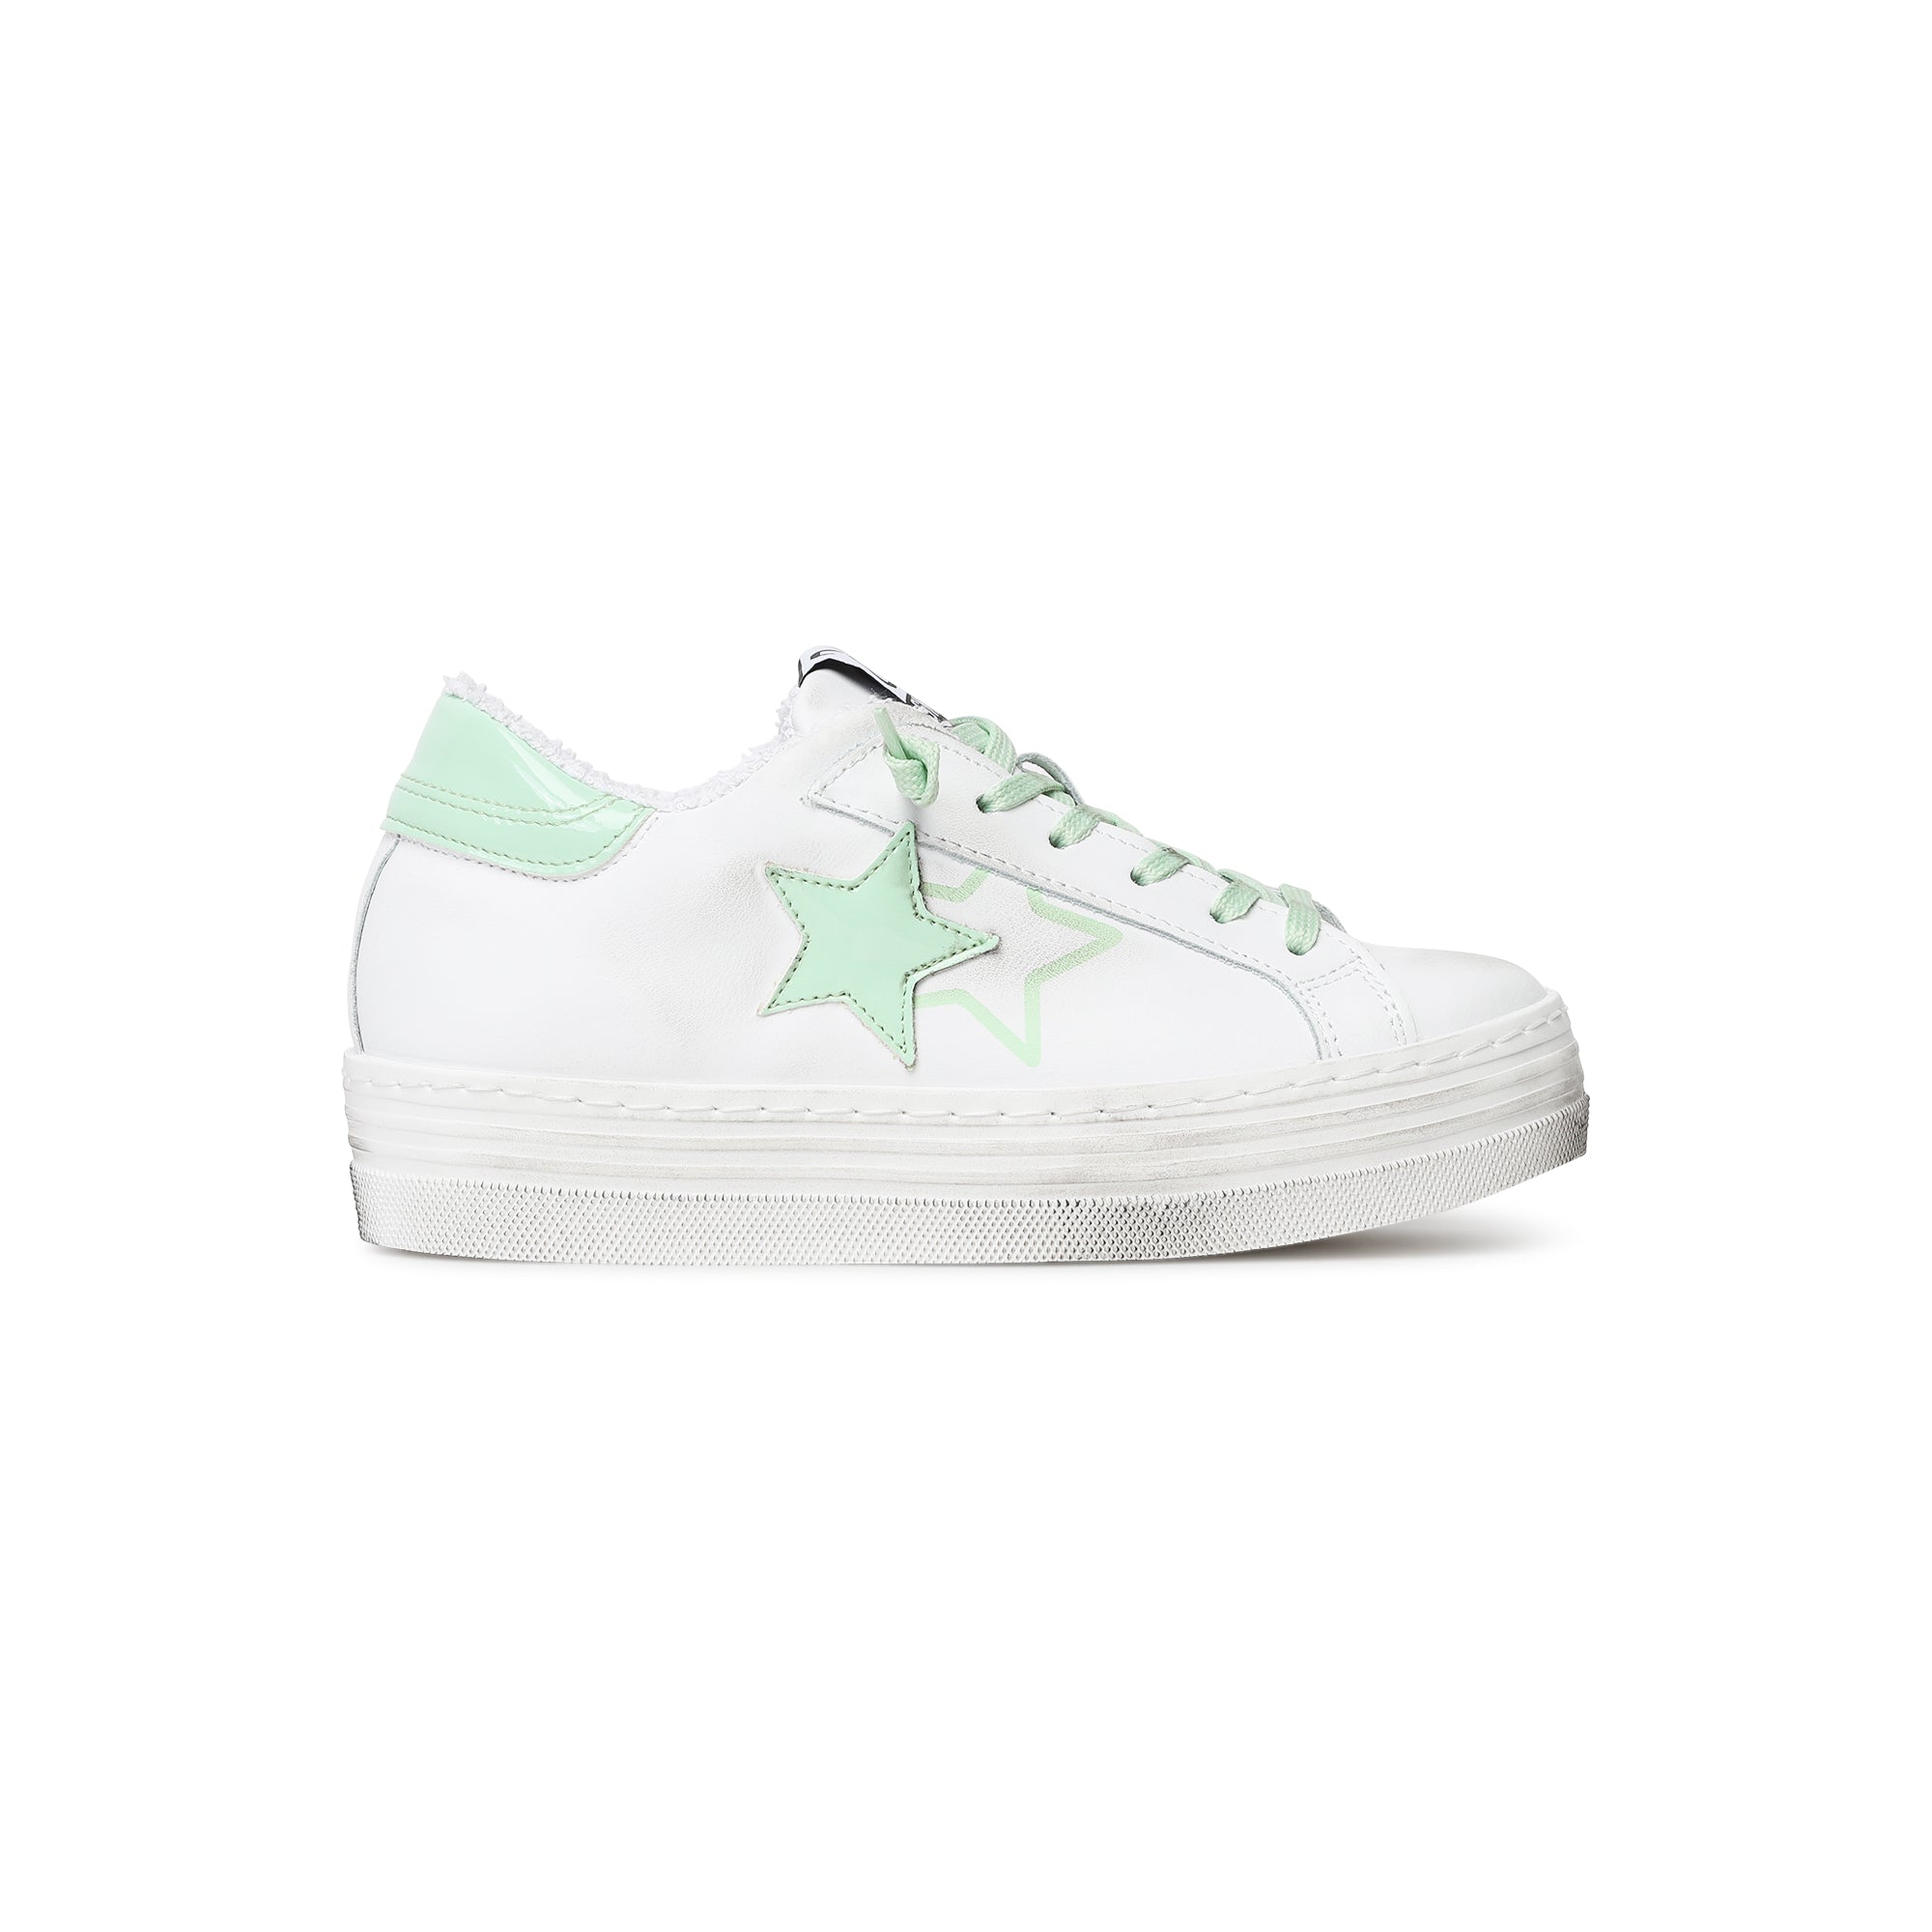 Sneaker platform 4cm in pelle con dettagli in vernice con effetto usato  bianco verdechiaro donna 